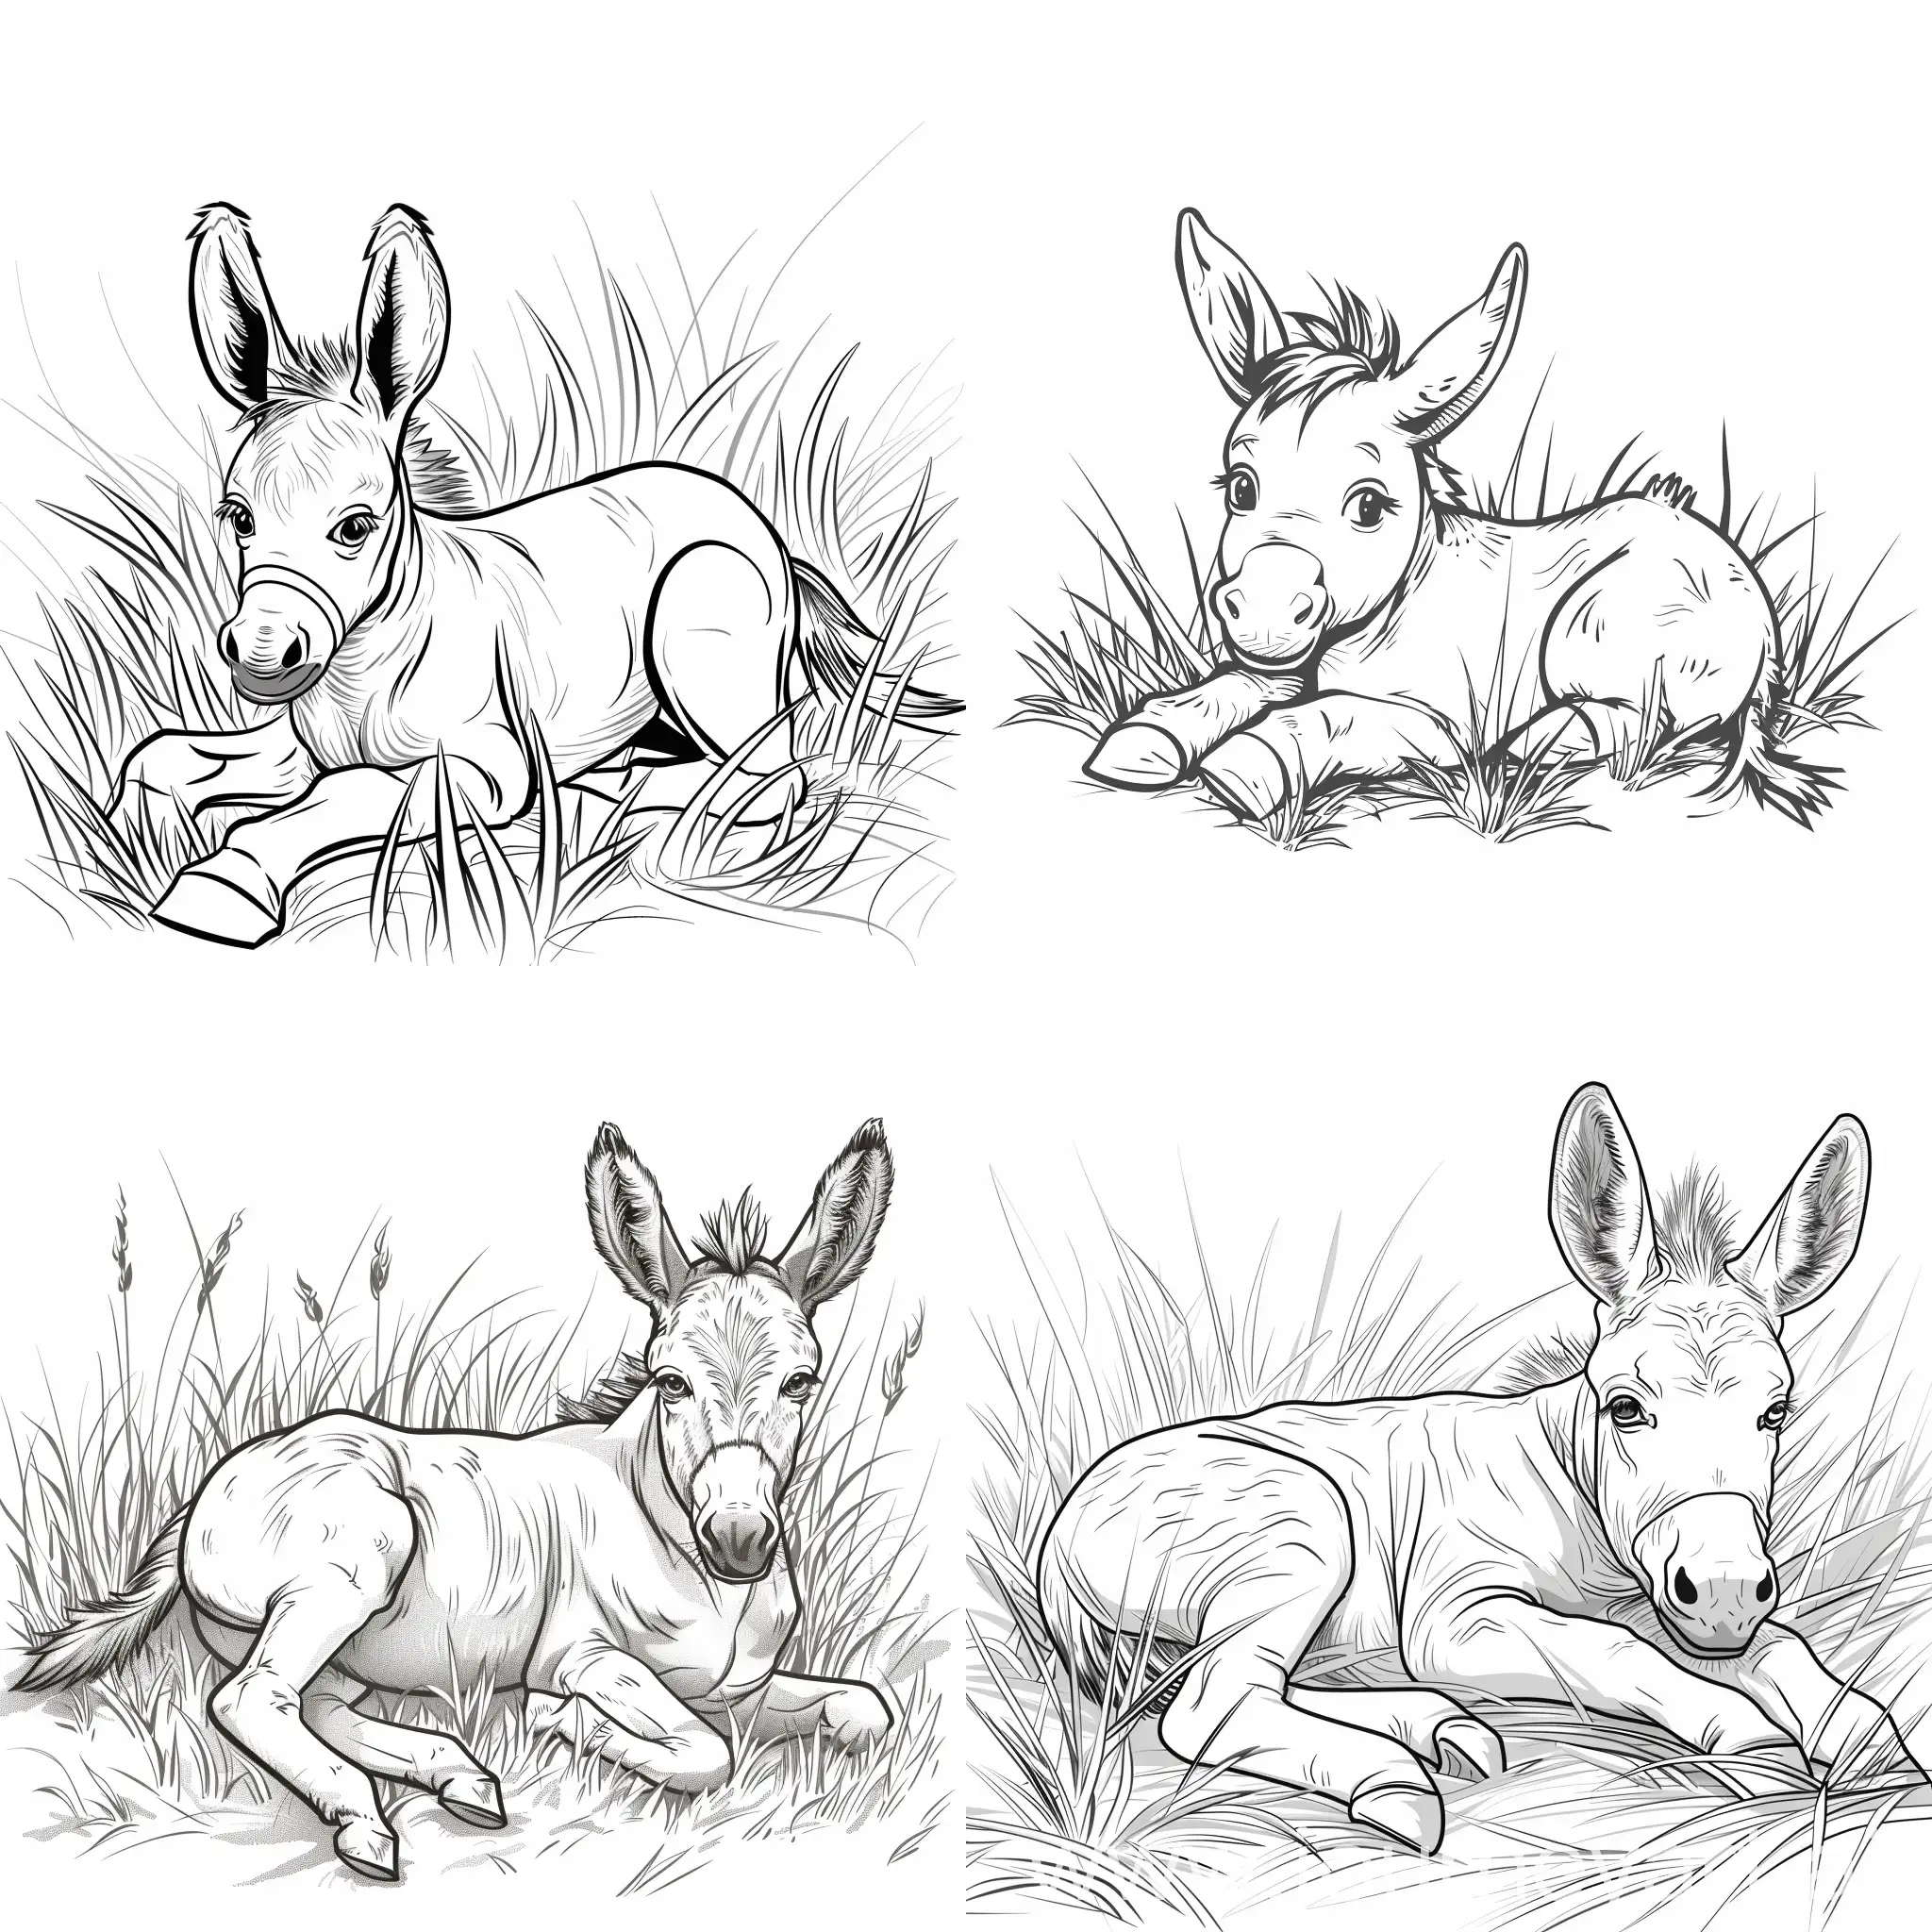 Dibujo de un burro lindo y sencillo echado en el pasto para libro de colorear de niños pequeños, sin escalas de grises en una hoja blanca con fondo liso sin dibujos